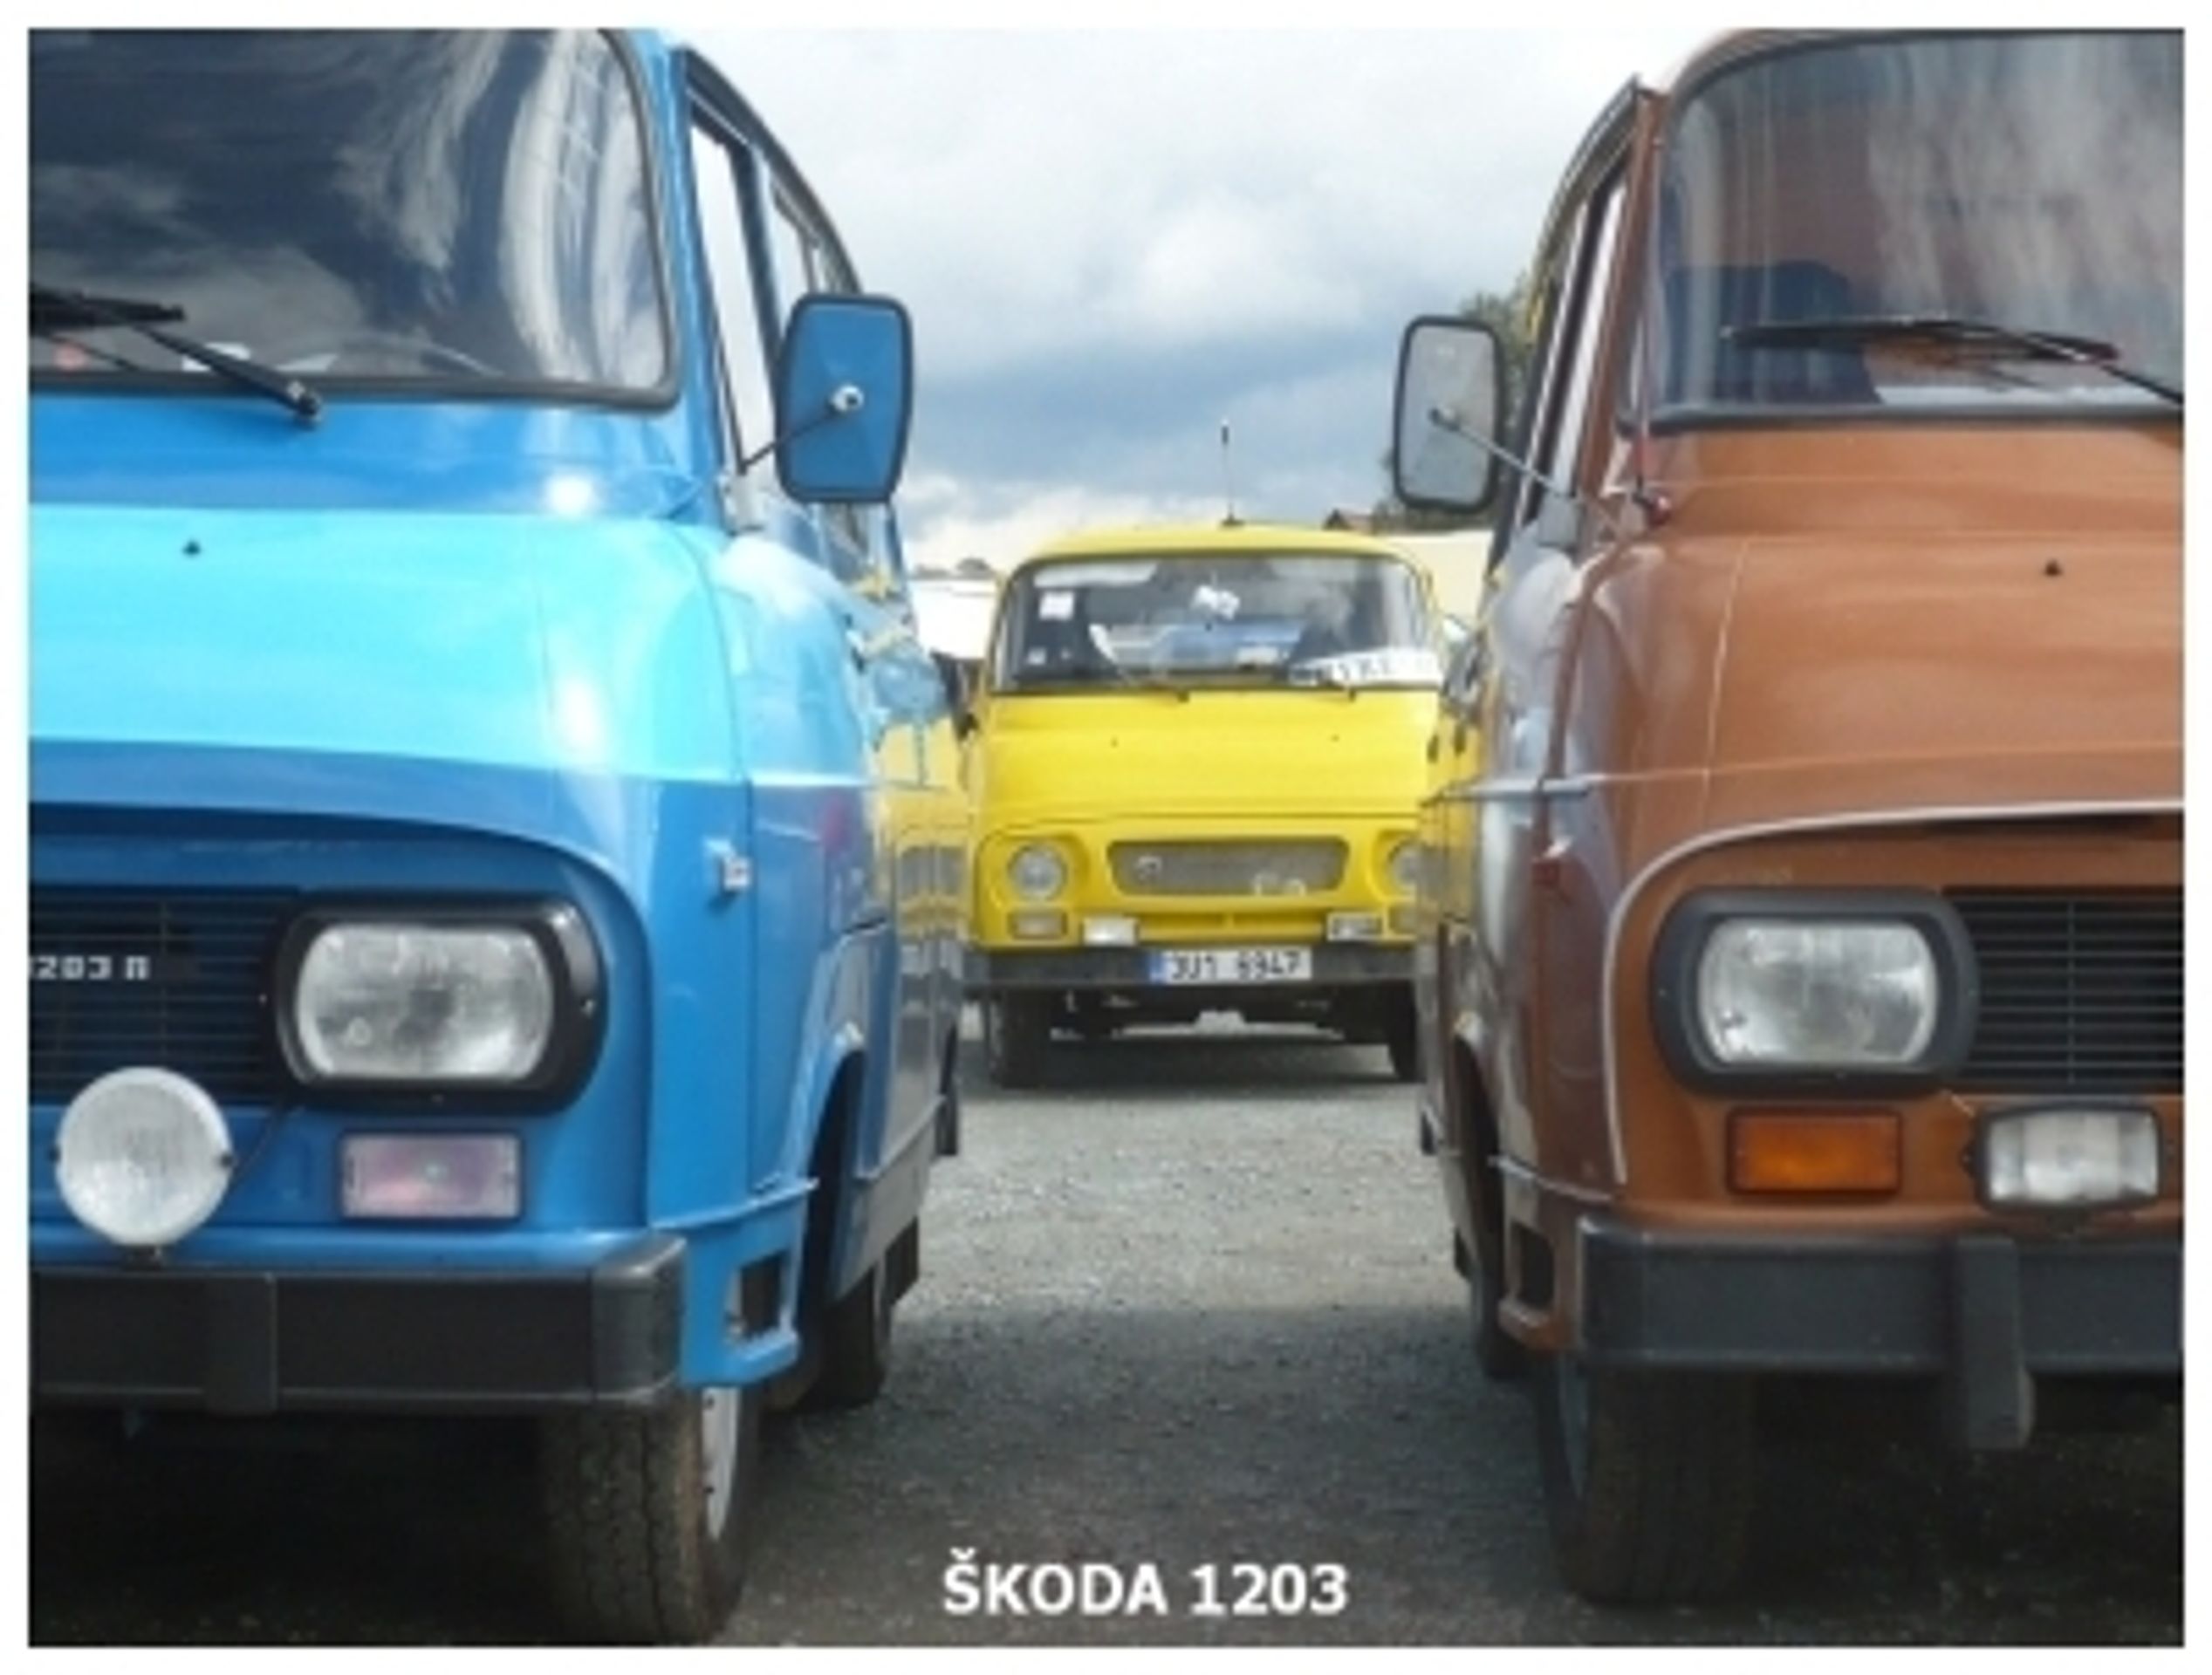 Kultovní Škoda 1203 - 75 - Fotogalerie: Kultovní “dvanda“ slaví. Podívejte se na originální úpravy (5/39)